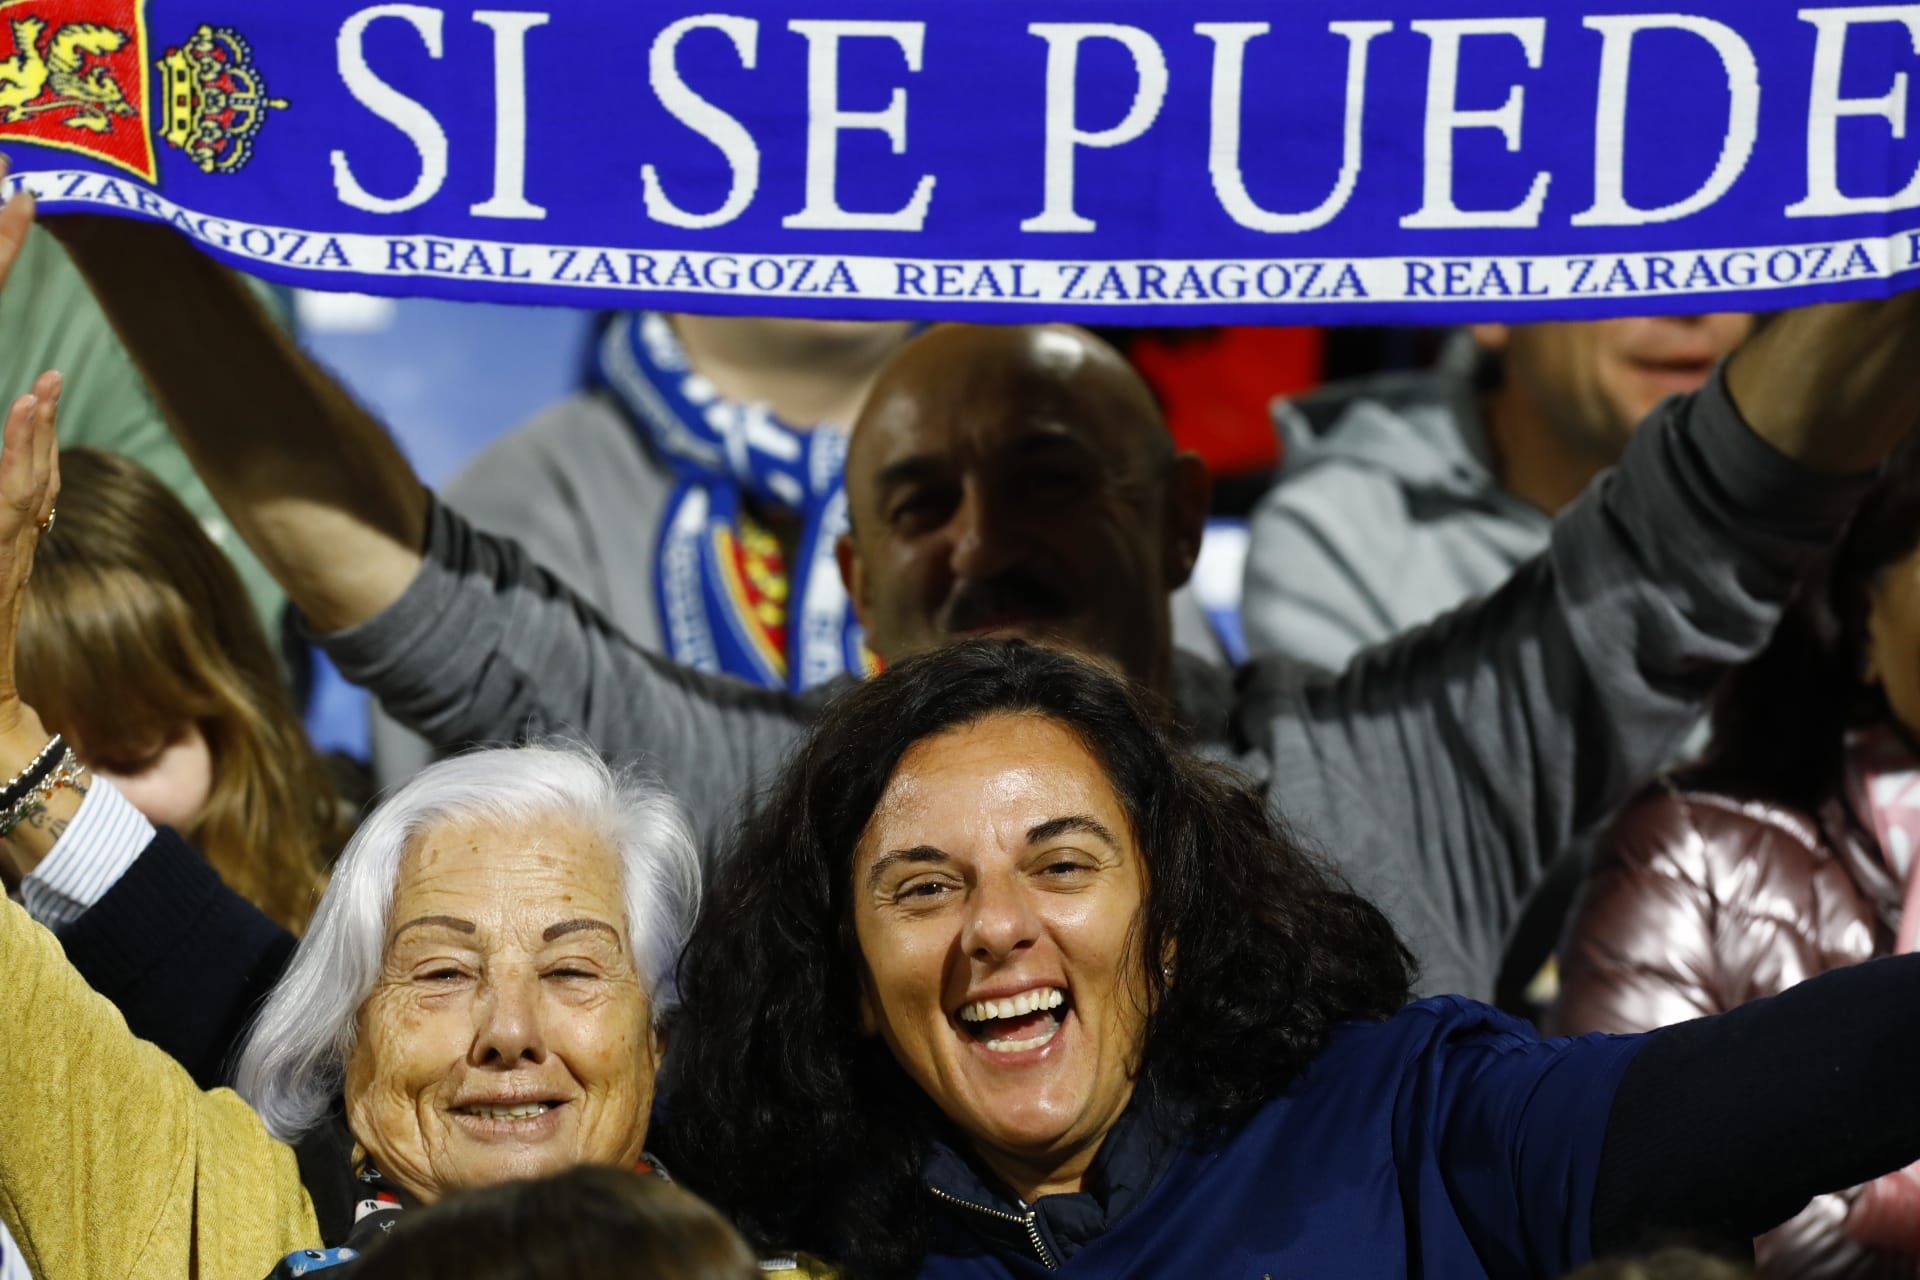 EN IMÁGENES | Las gradas de La Romareda derrochan emoción en el Real Zaragoza - Huesca